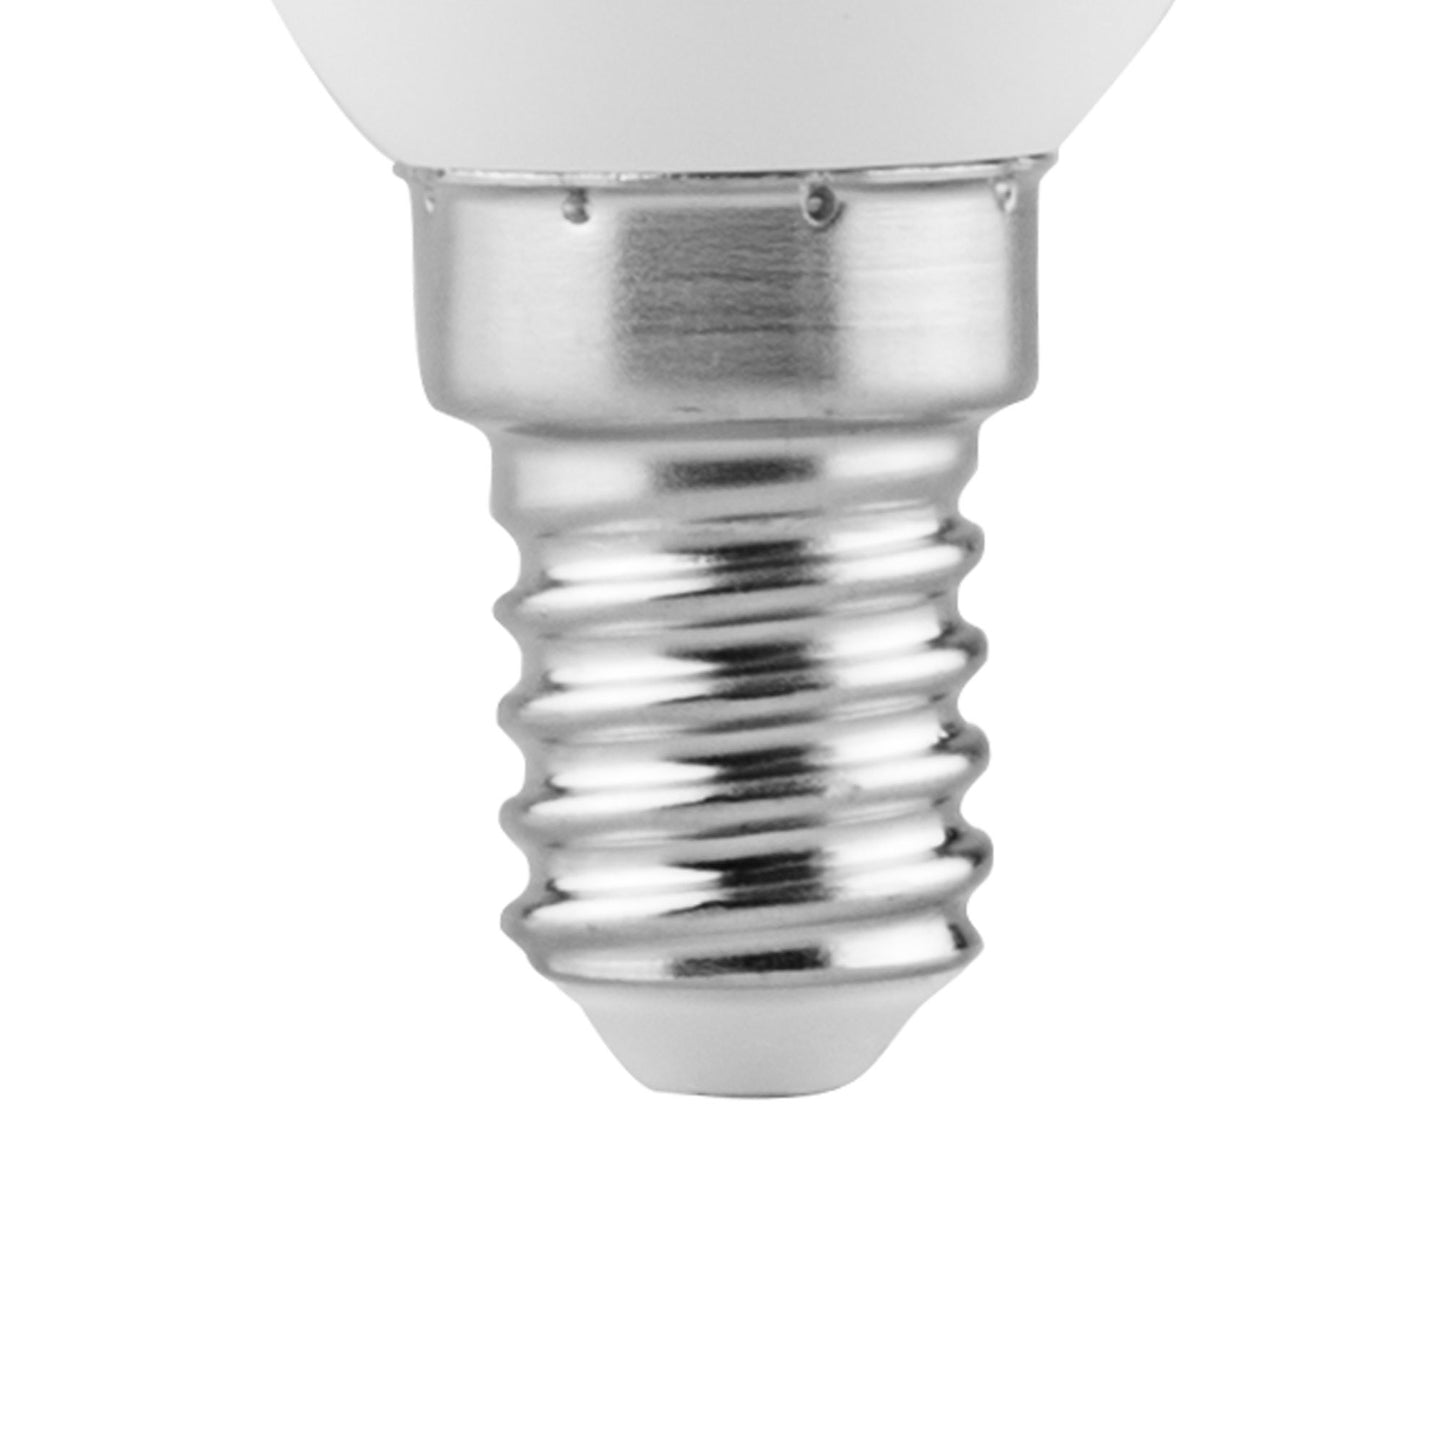 LED LAMP MATEL CHAMA E14 5W (3 INTENSITIES) 